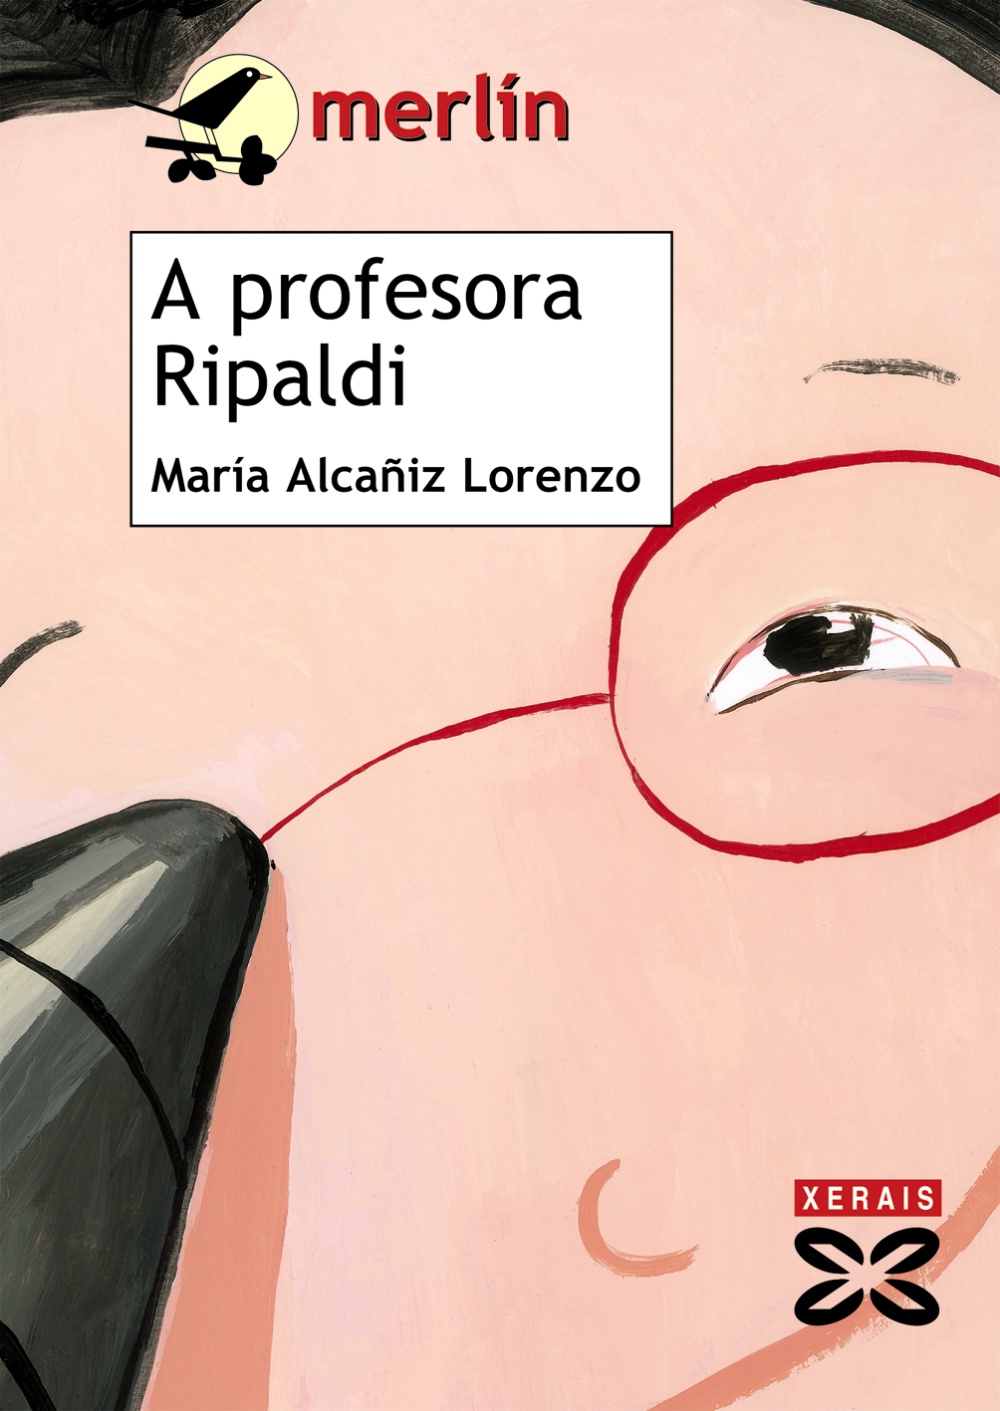 A profesora Ripaldi